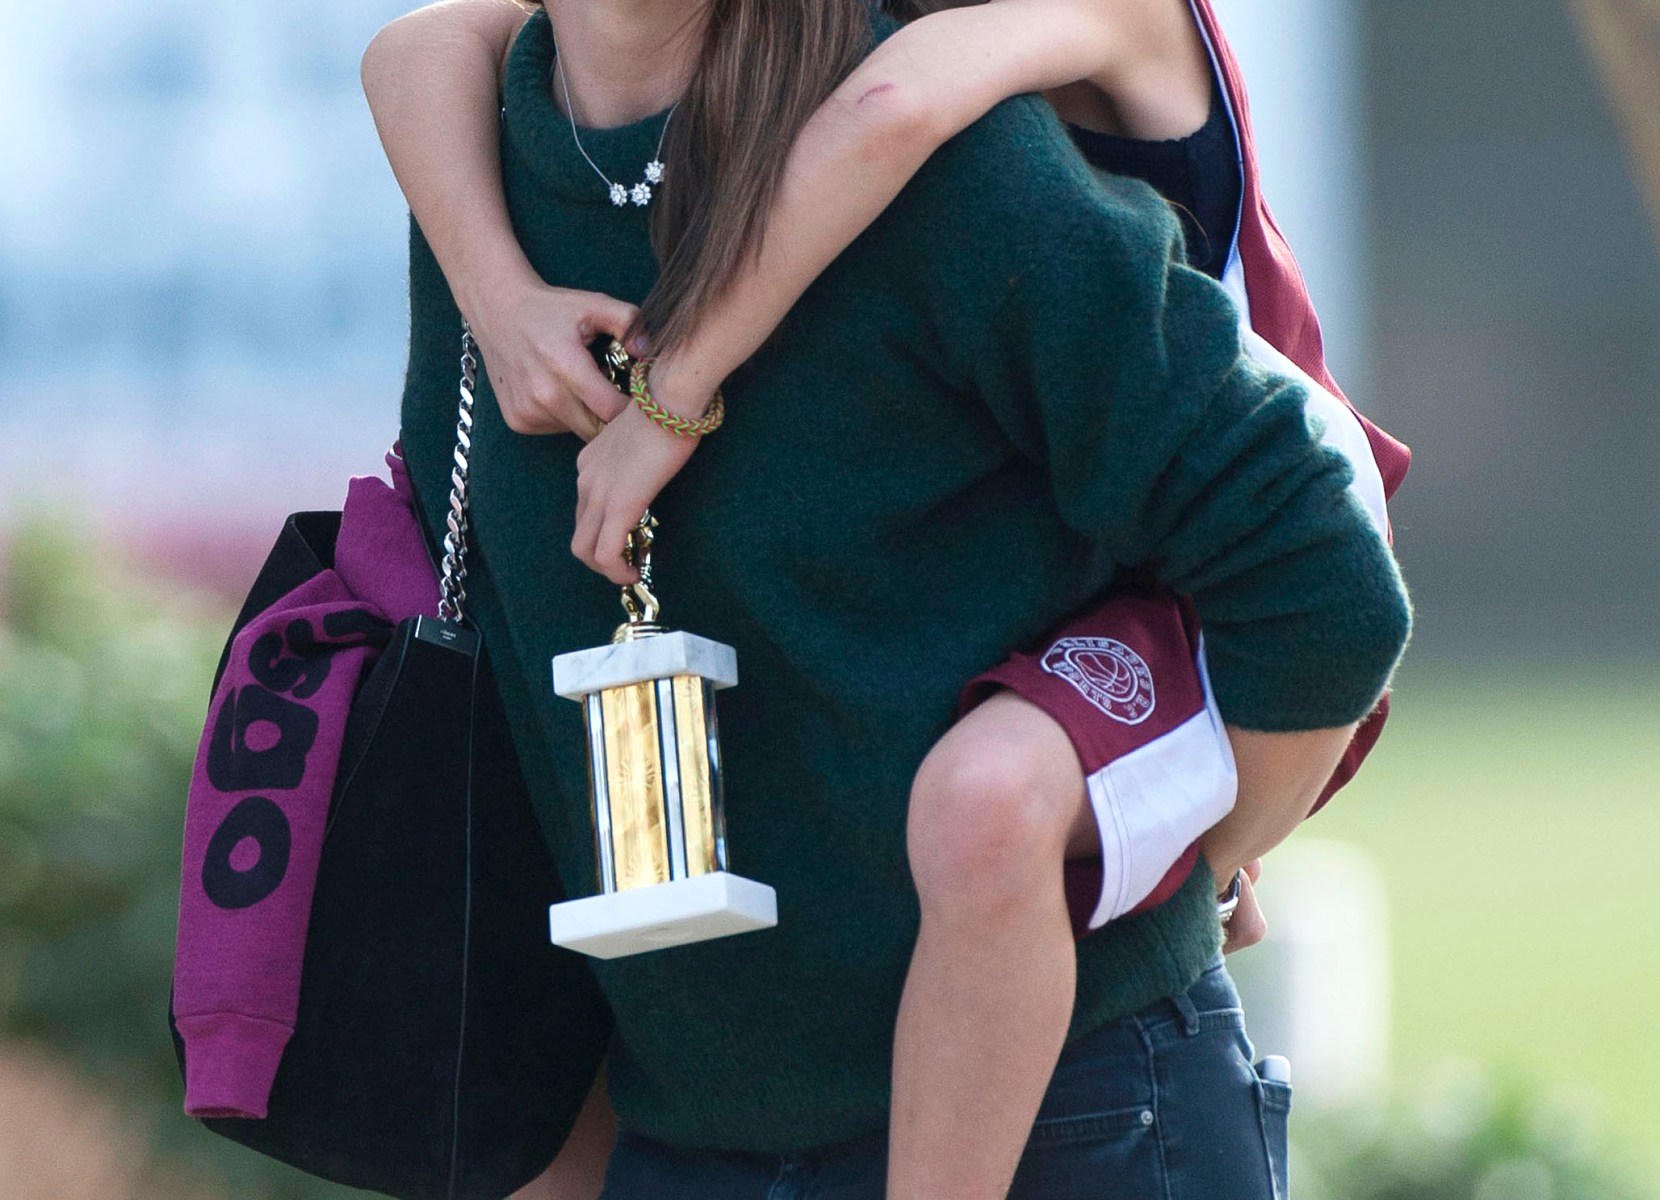 Jennifer Garner's Daughter Violet Affleck Looks All Grown up in New Photos